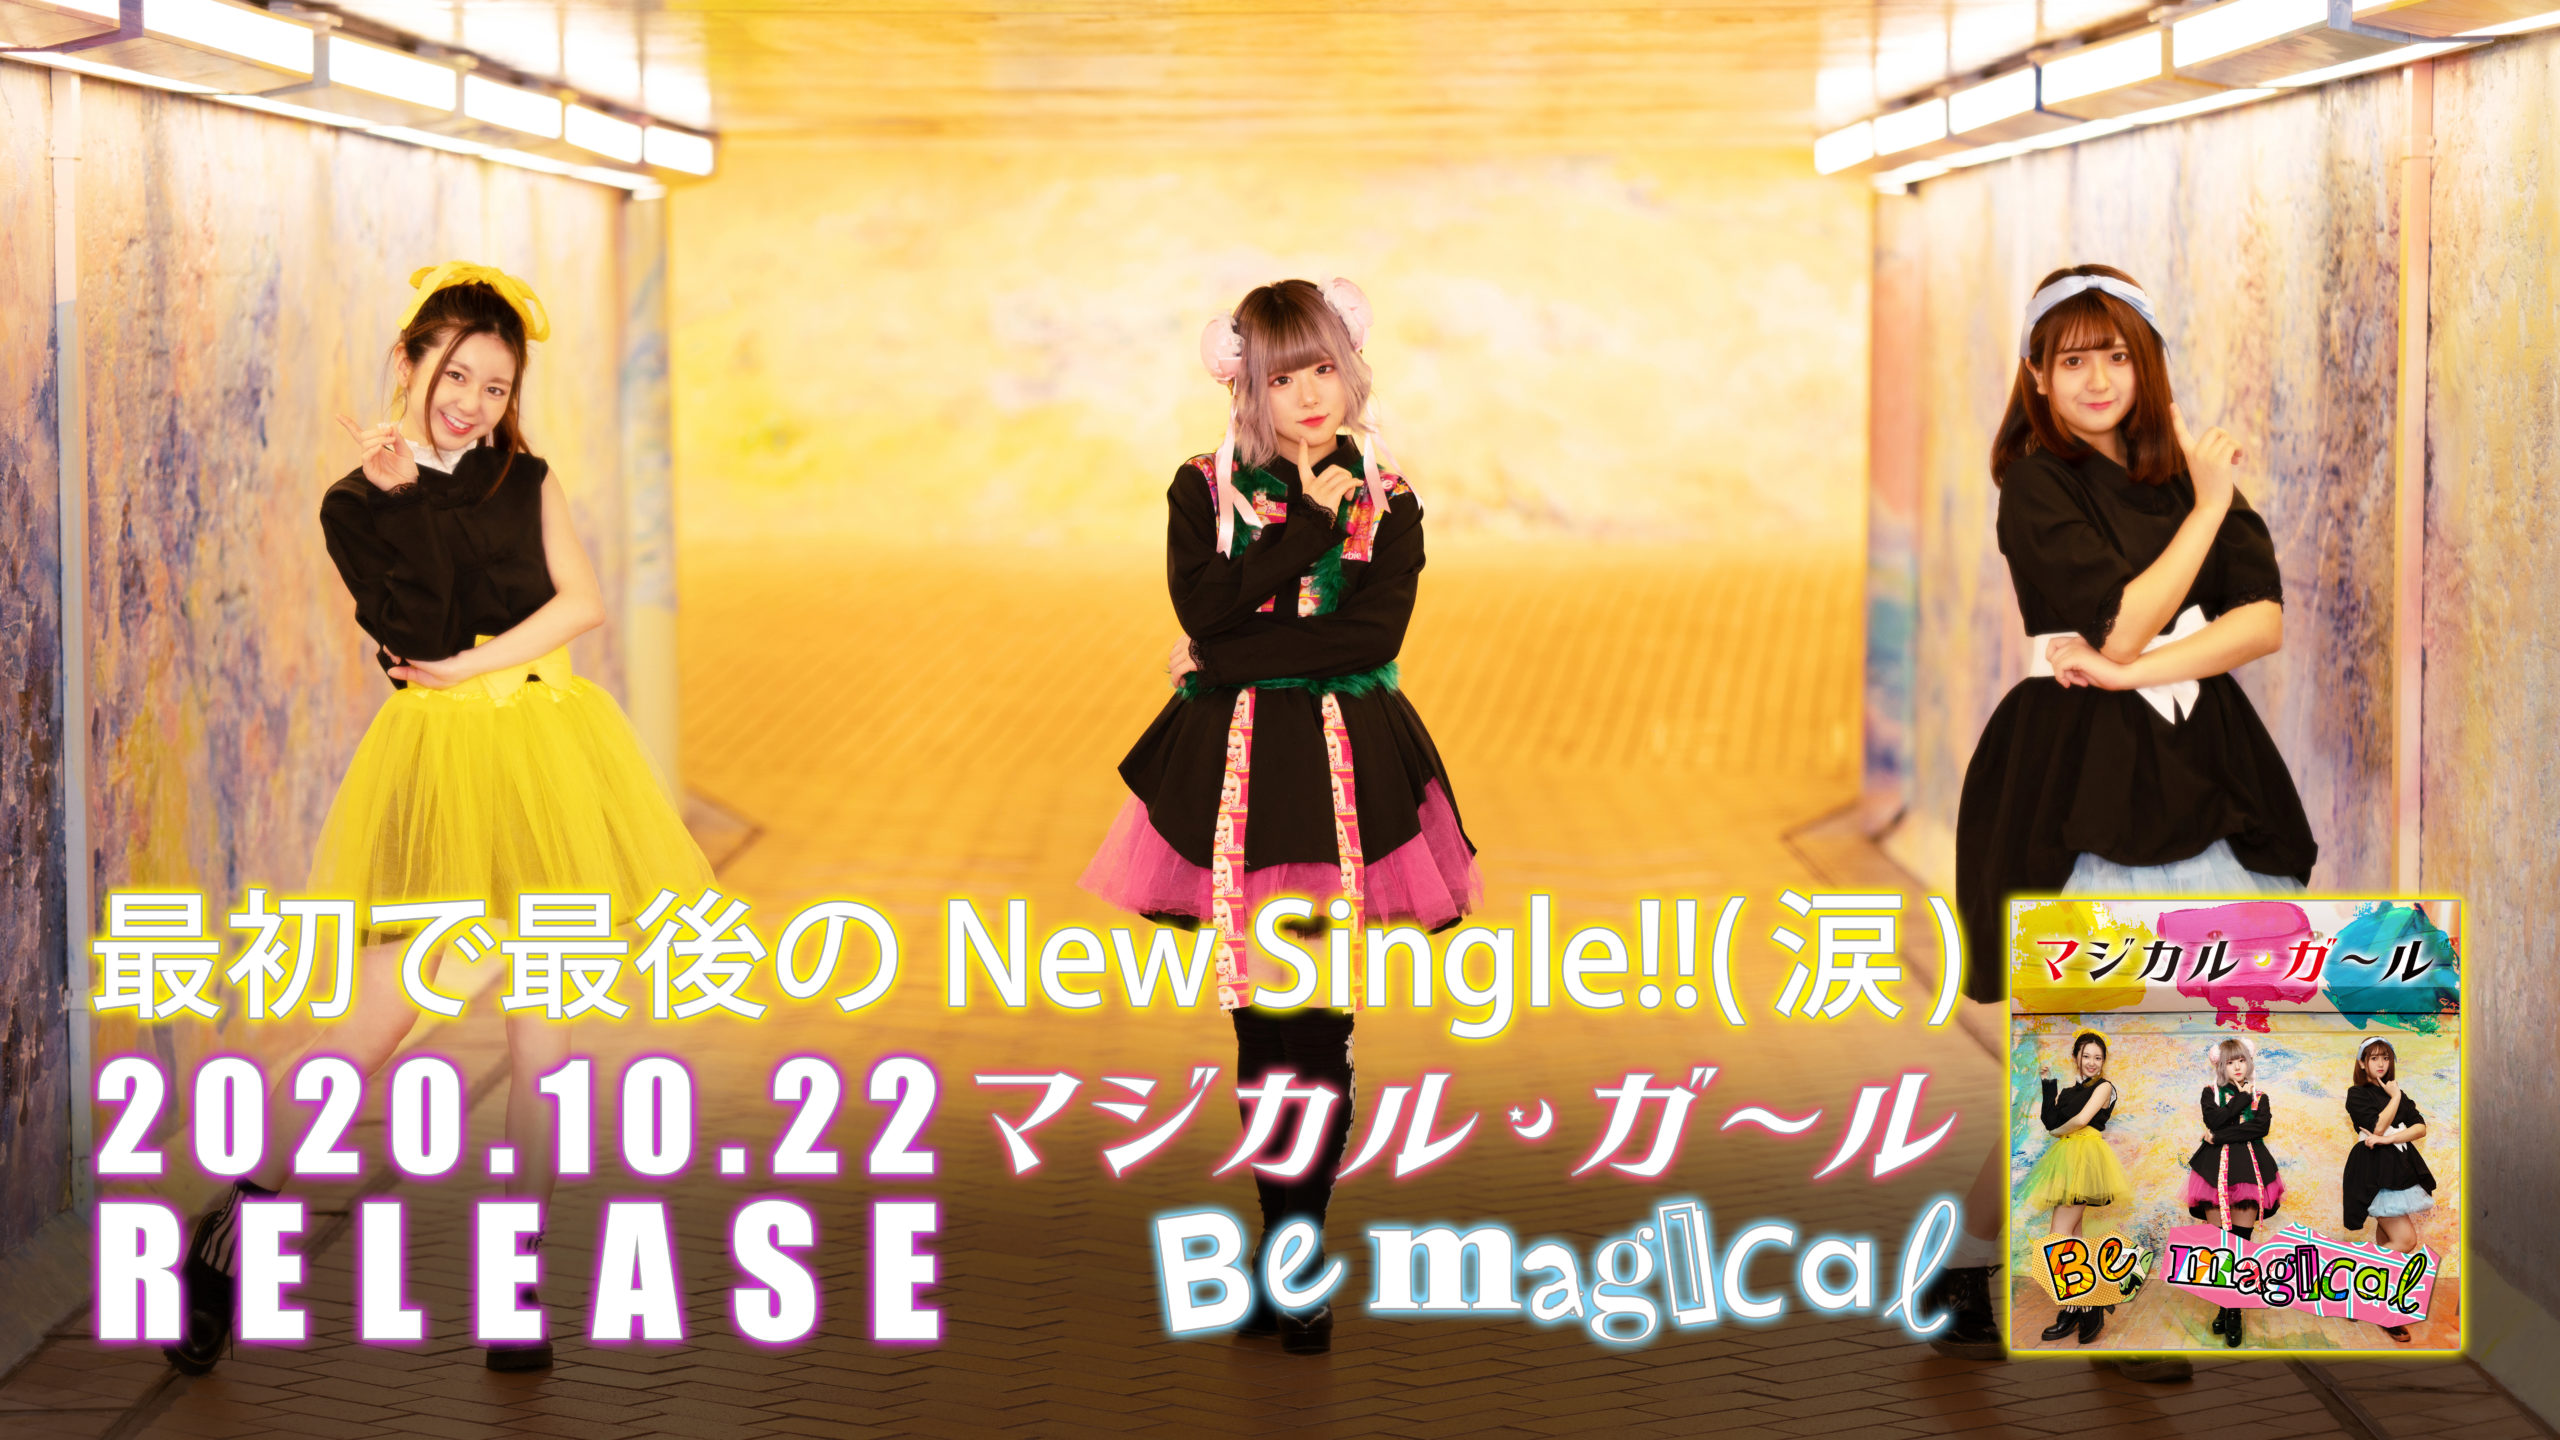 マジカル・ガール「Be magical」RELEASE